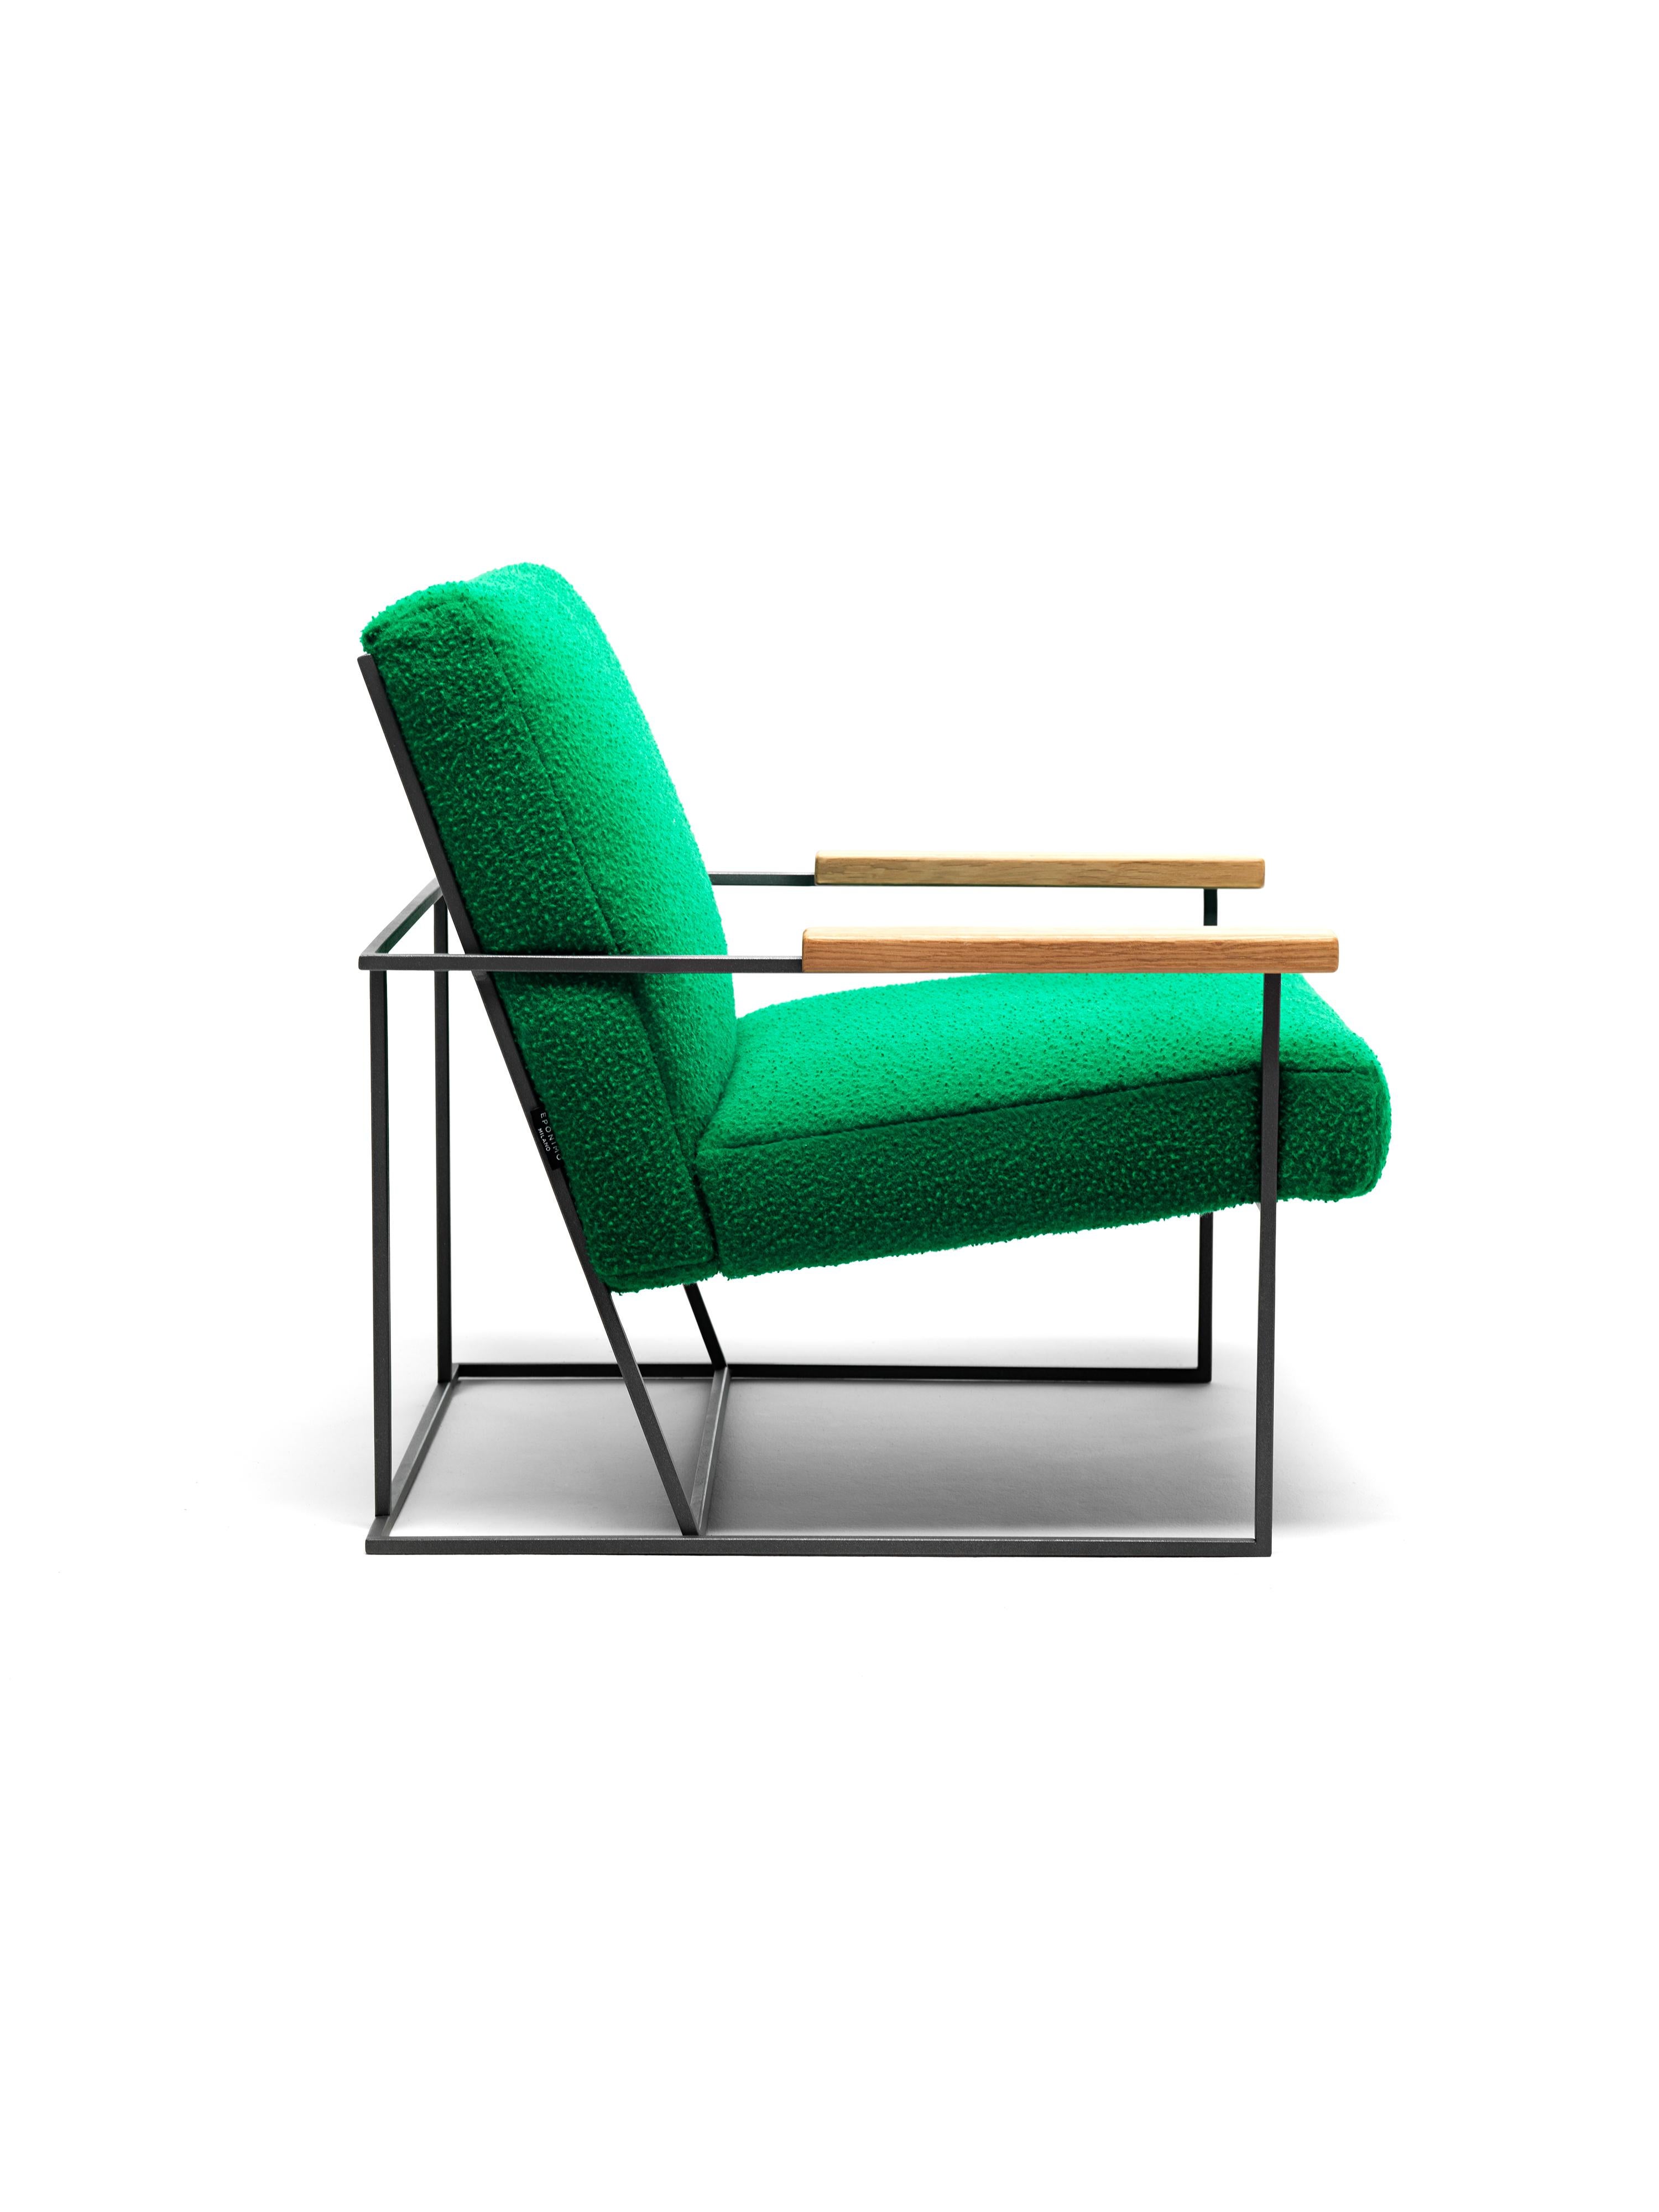 La géométrie linéaire distinctive et la légèreté visuelle du fauteuil Gotham proviennent de son cadre métallique, une structure aérienne épurée qui accueille les coussins de l'assise et du dossier. Ces derniers, en revanche, sont généreux et